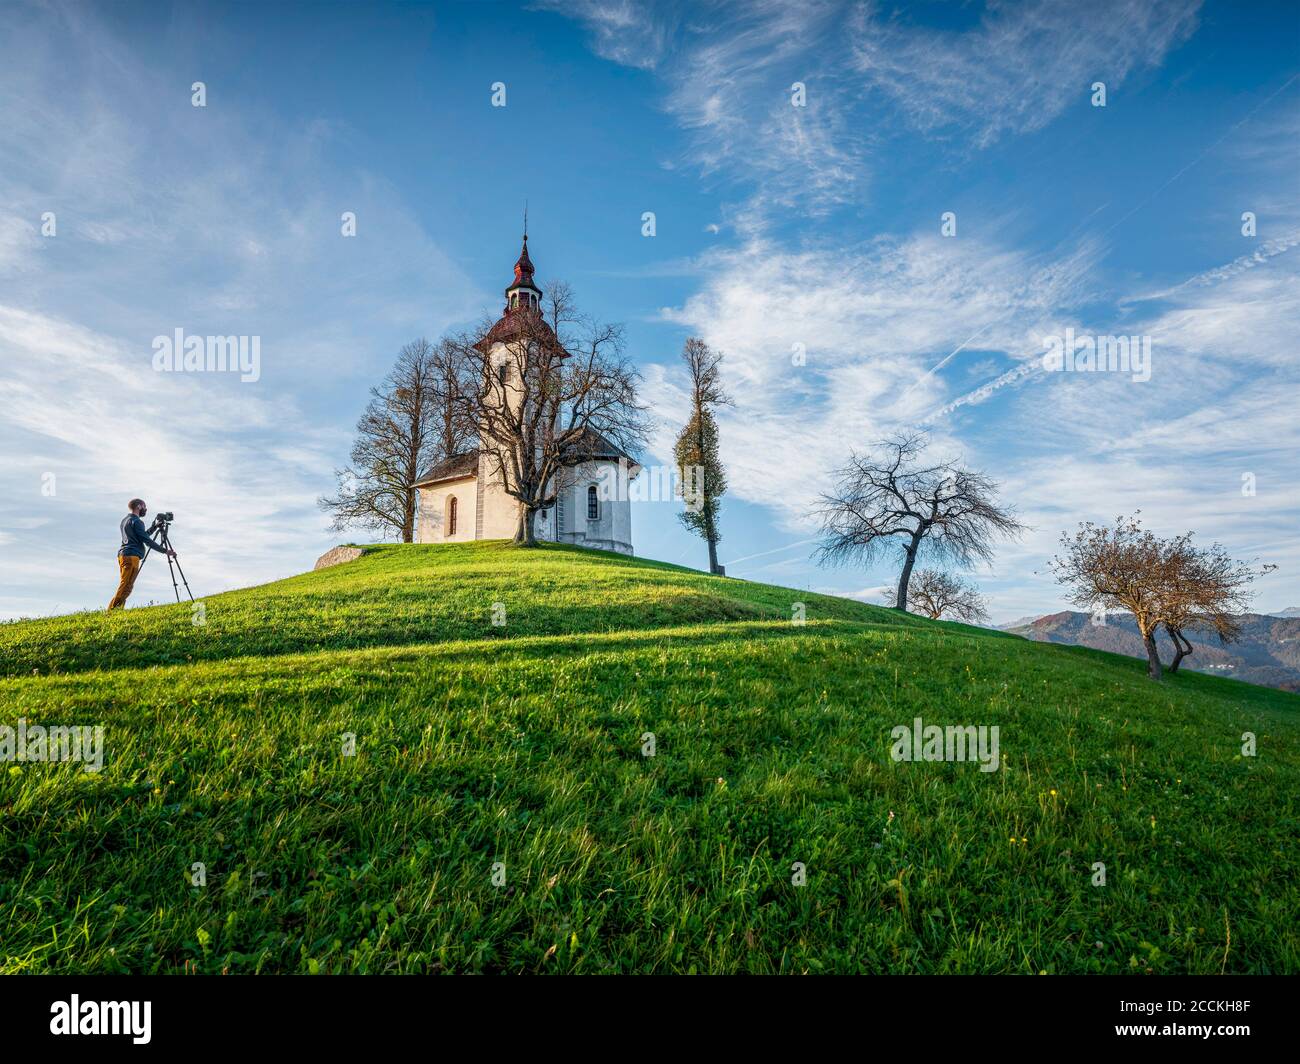 Slowenien, Oberkrain, Gemeinde Skofja Loka, der Mensch fotografiert die St. Thomass Kirche im Herbst Stockfoto